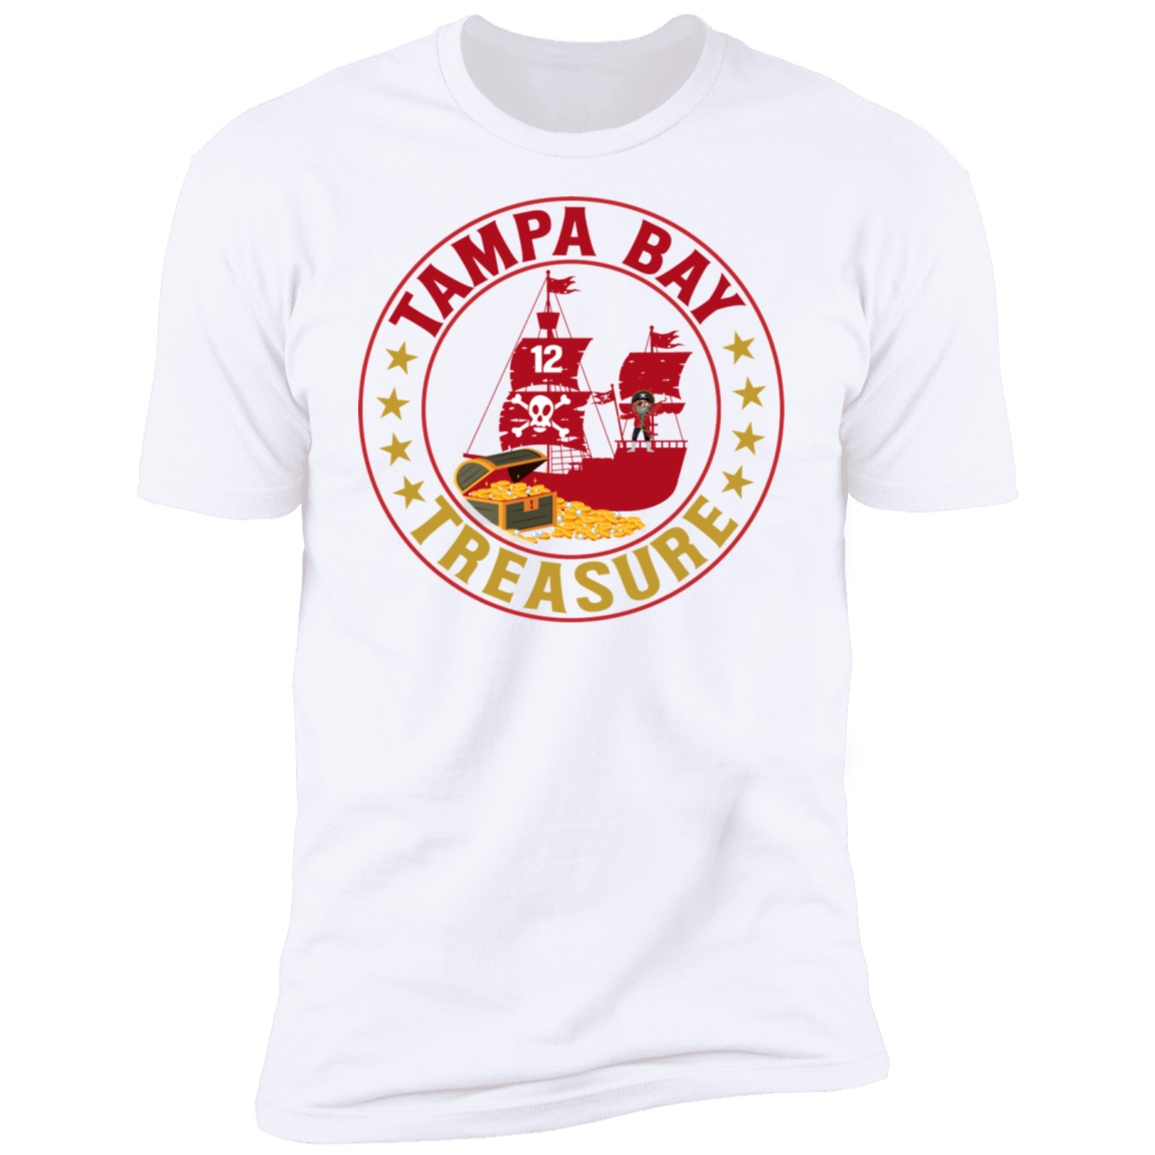 Tampa Bay Treasure Short Sleeve T-Shirt